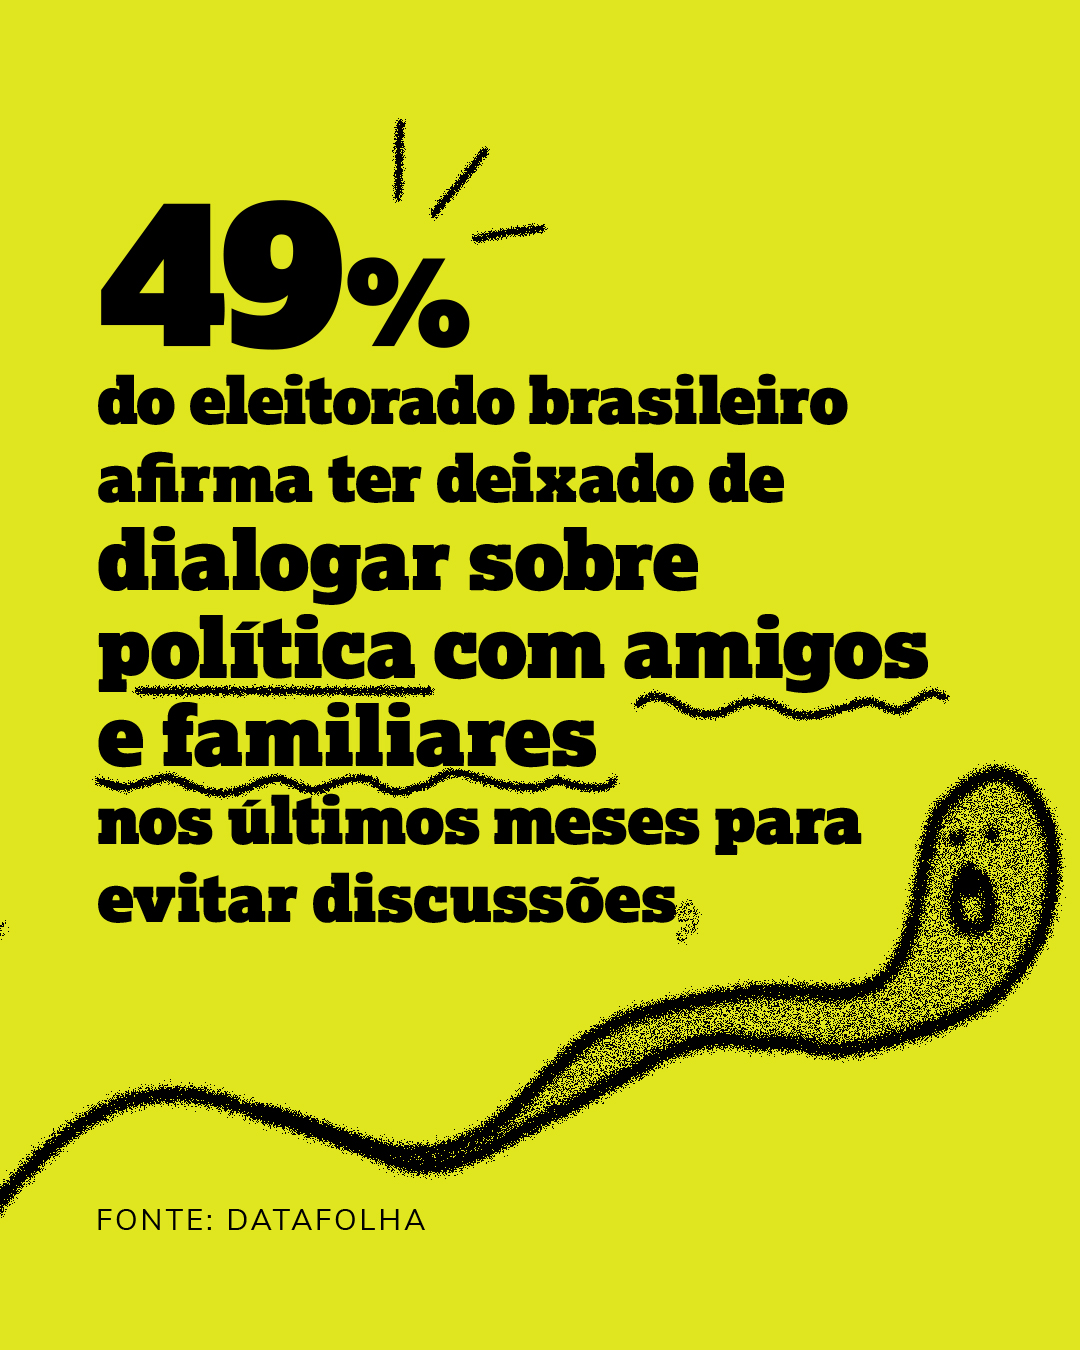 49% dos eleitores brasileiros parou de debater política com familiares e amigos para evitar brigas